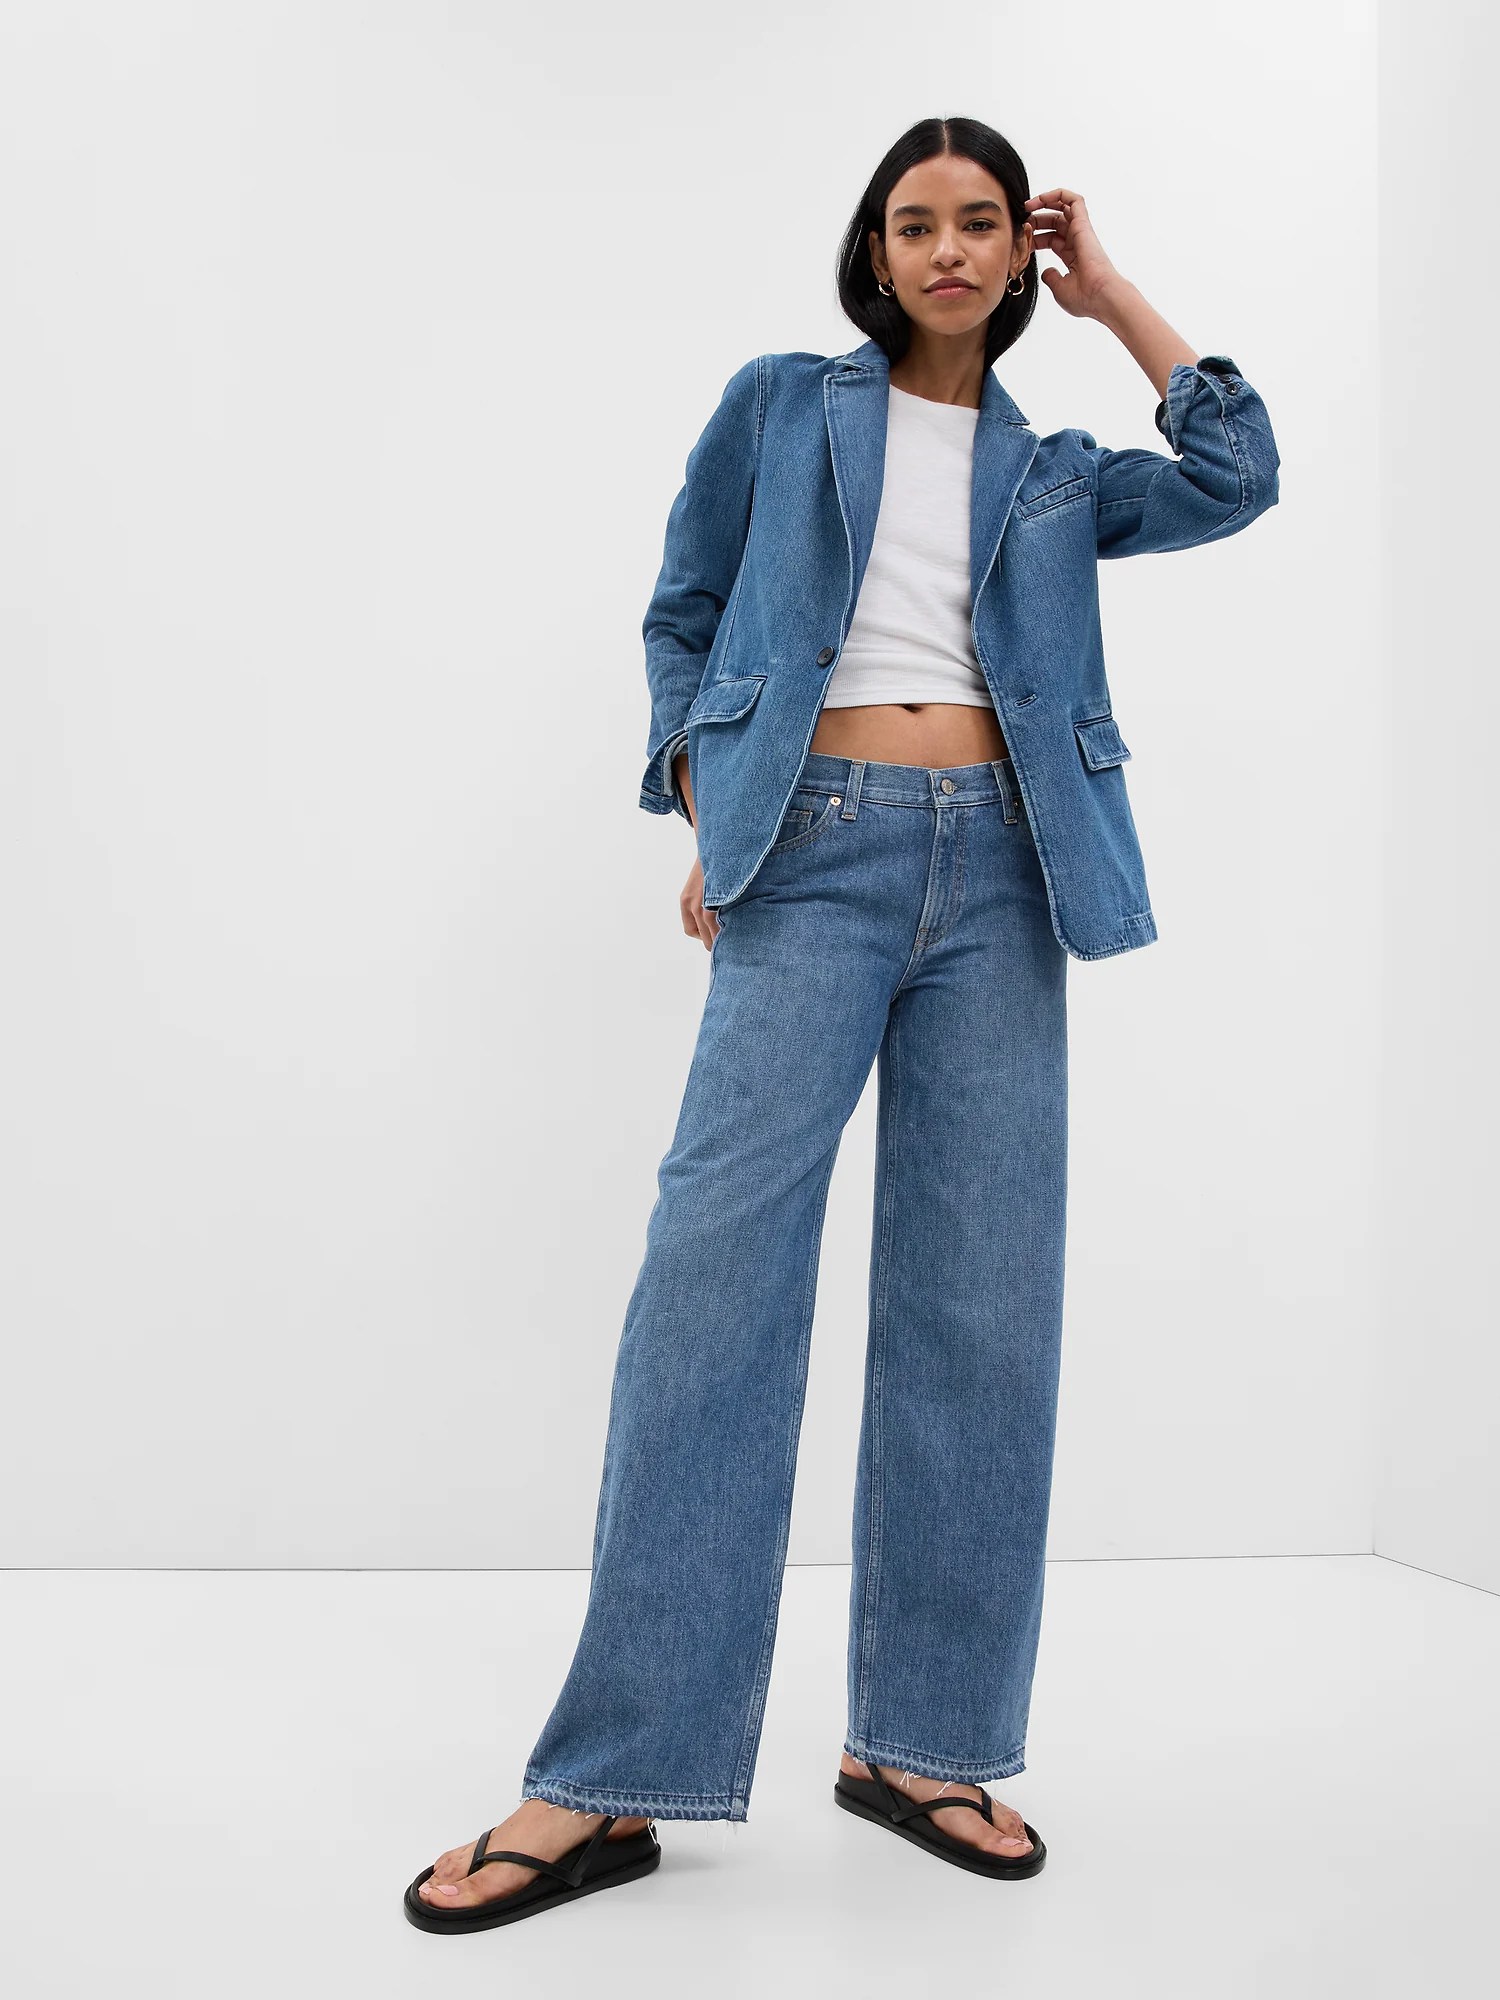 model wearing low stride jeans from gap